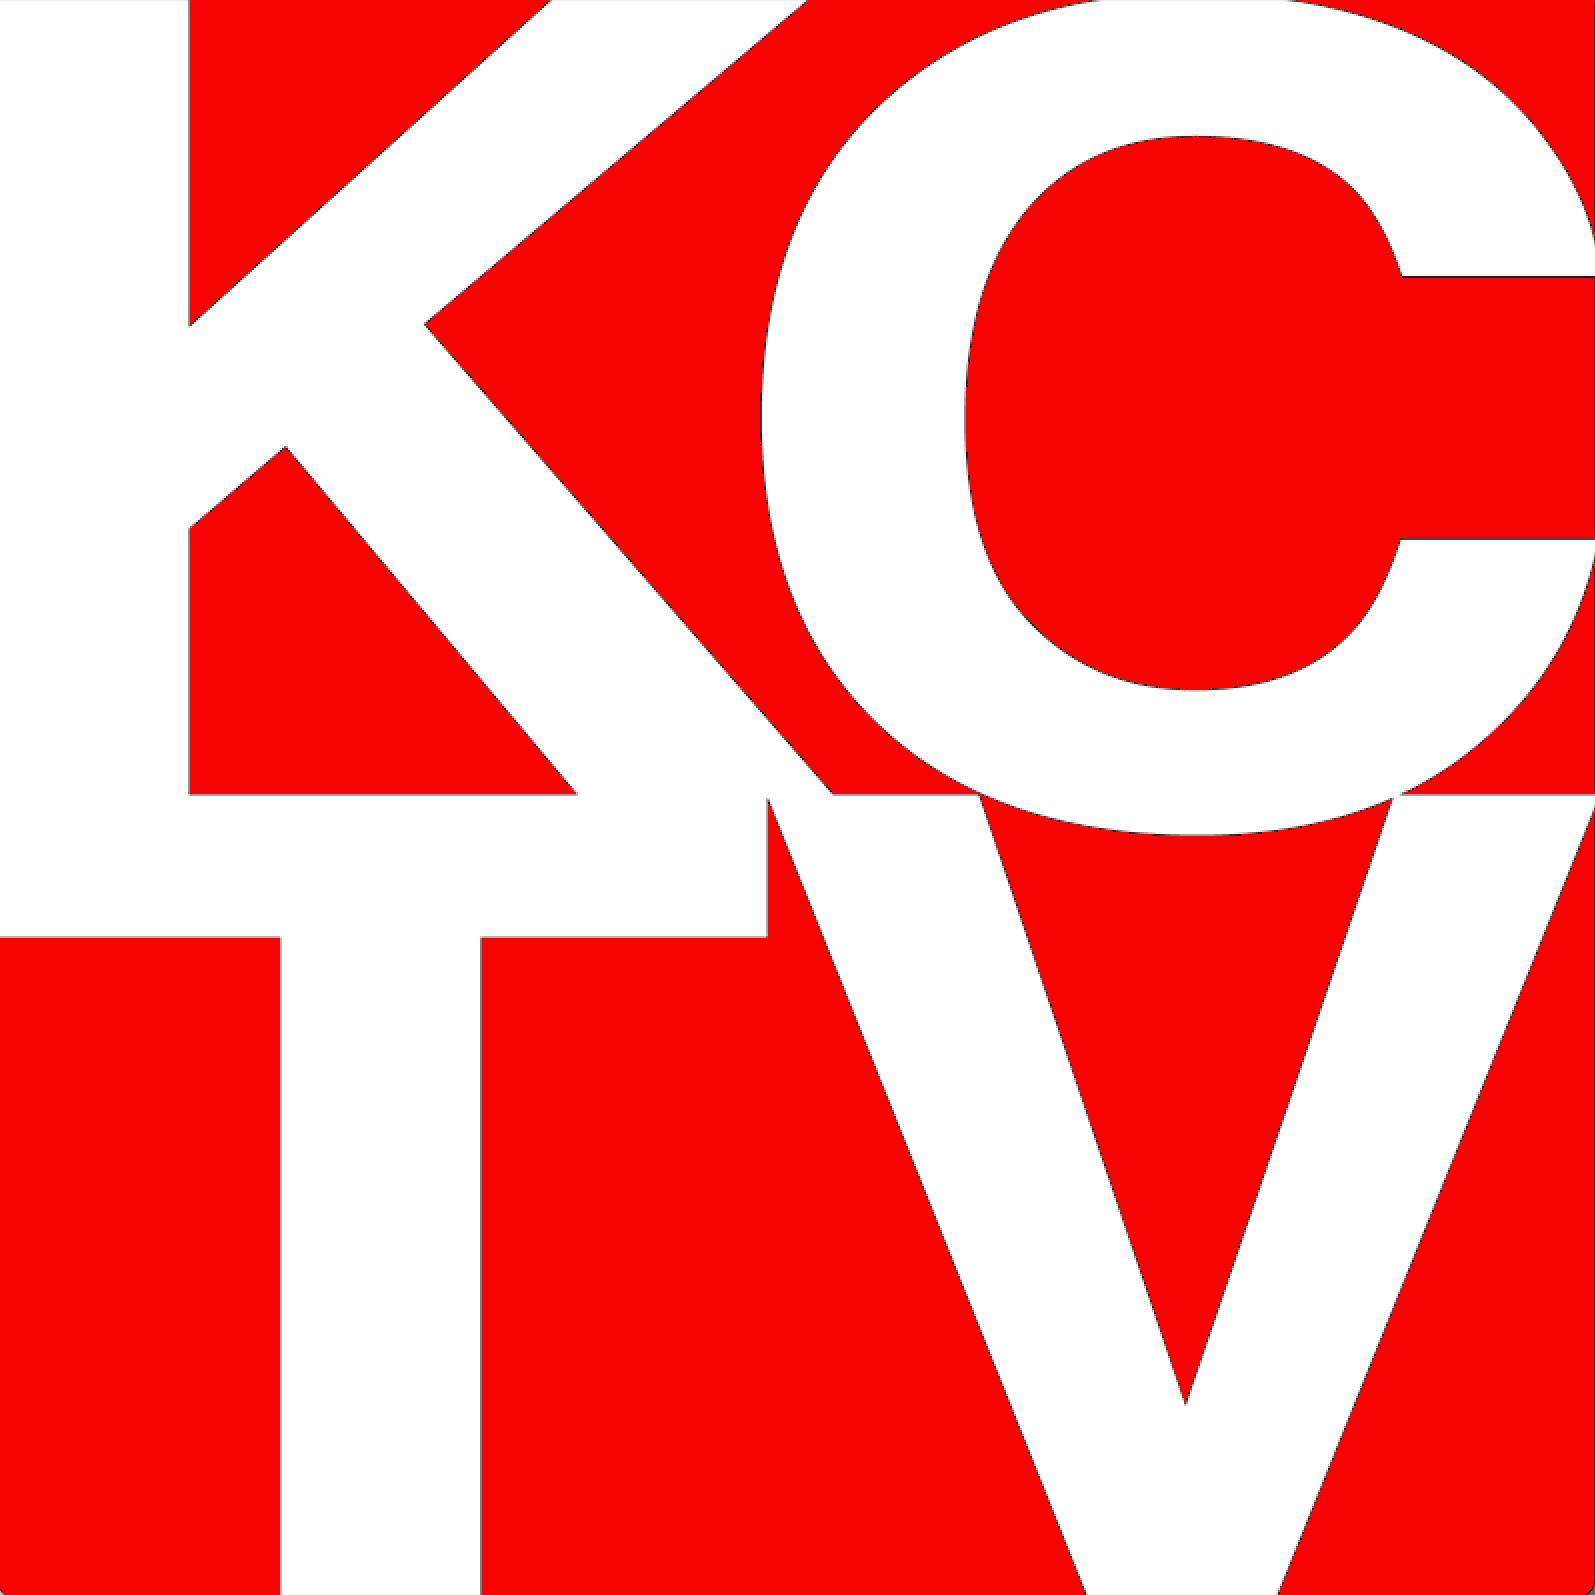 KCTV LOGO